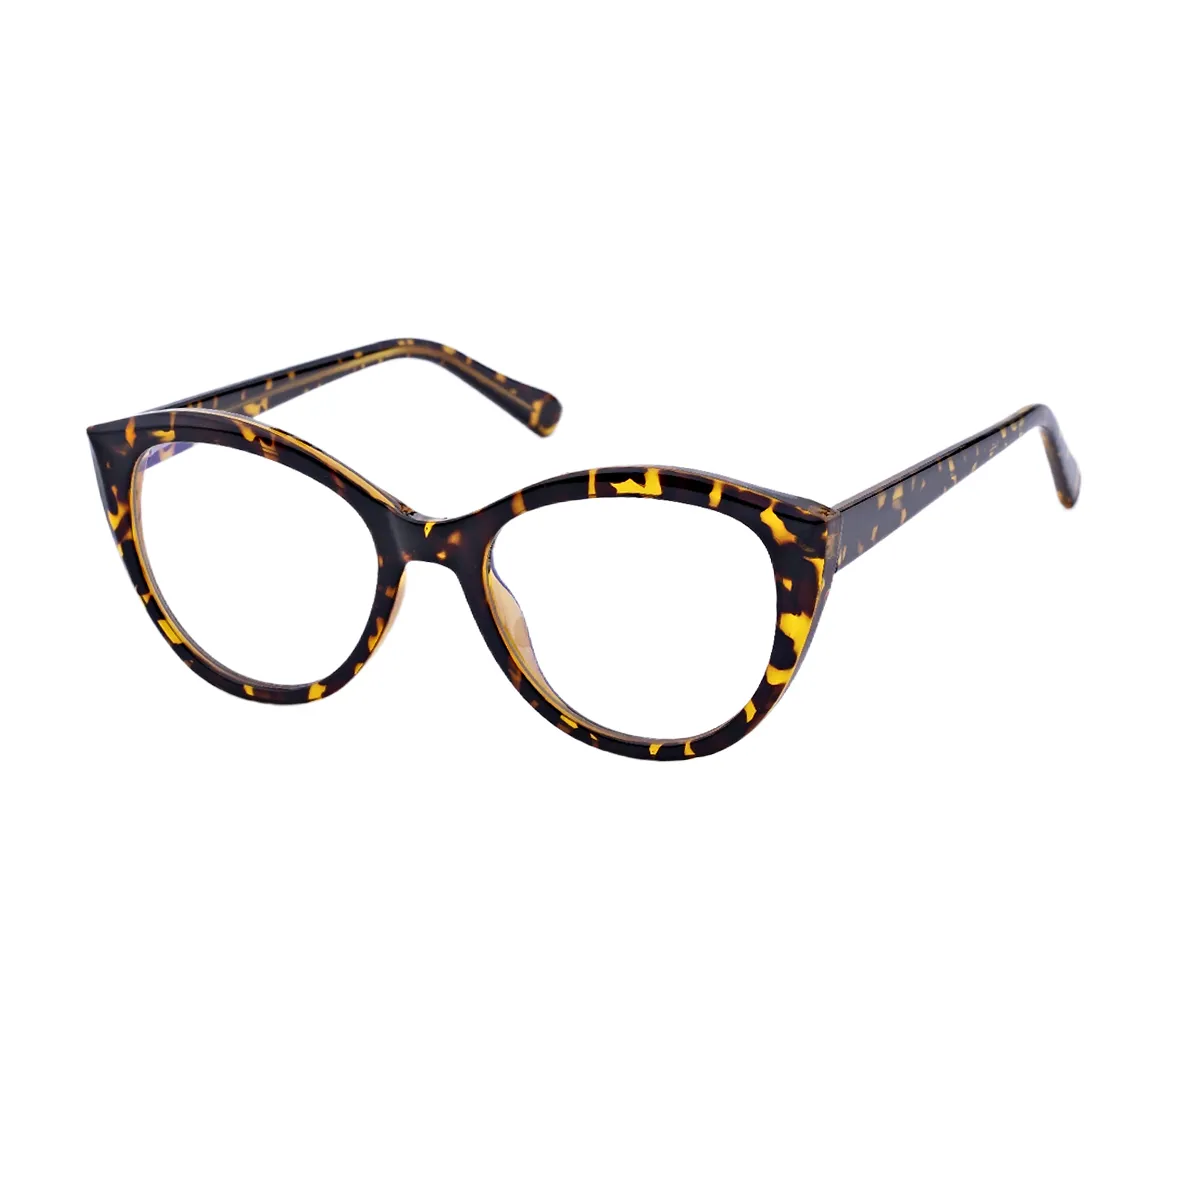 Griselda - Cat-eye Tortoiseshell Glasses for Women